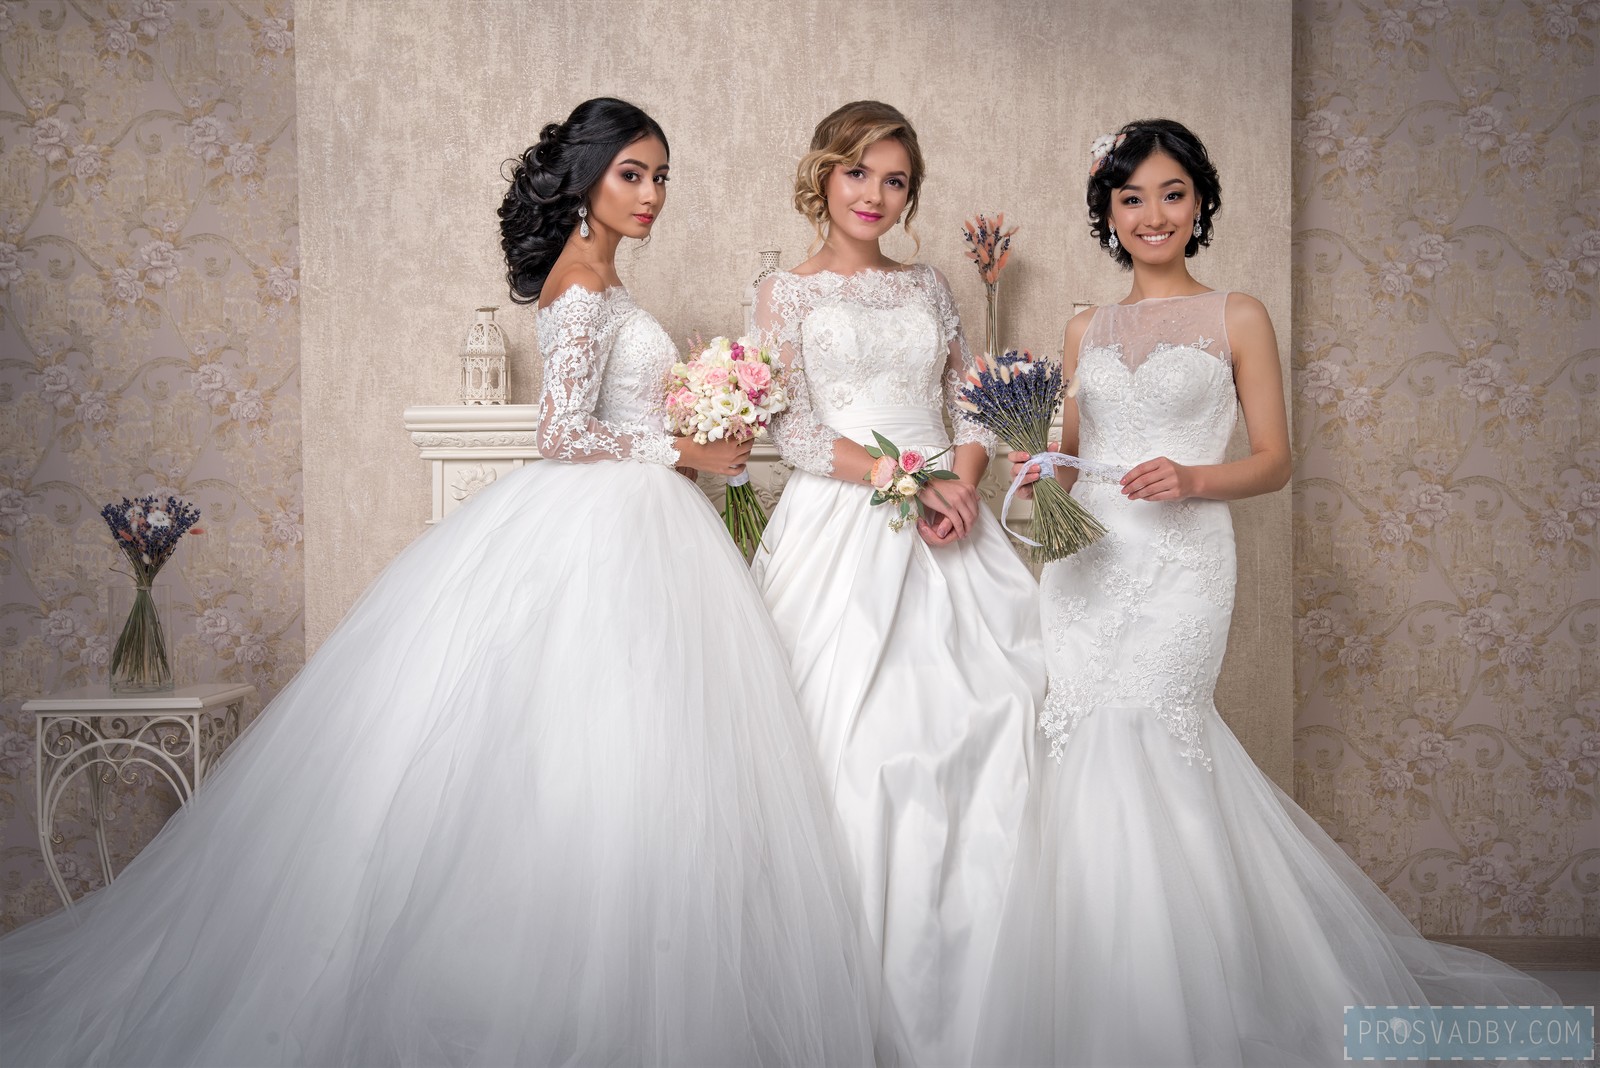 Три девушки, которым повезло принять участие в проекте Свадебное преображение Prosvadby.com.